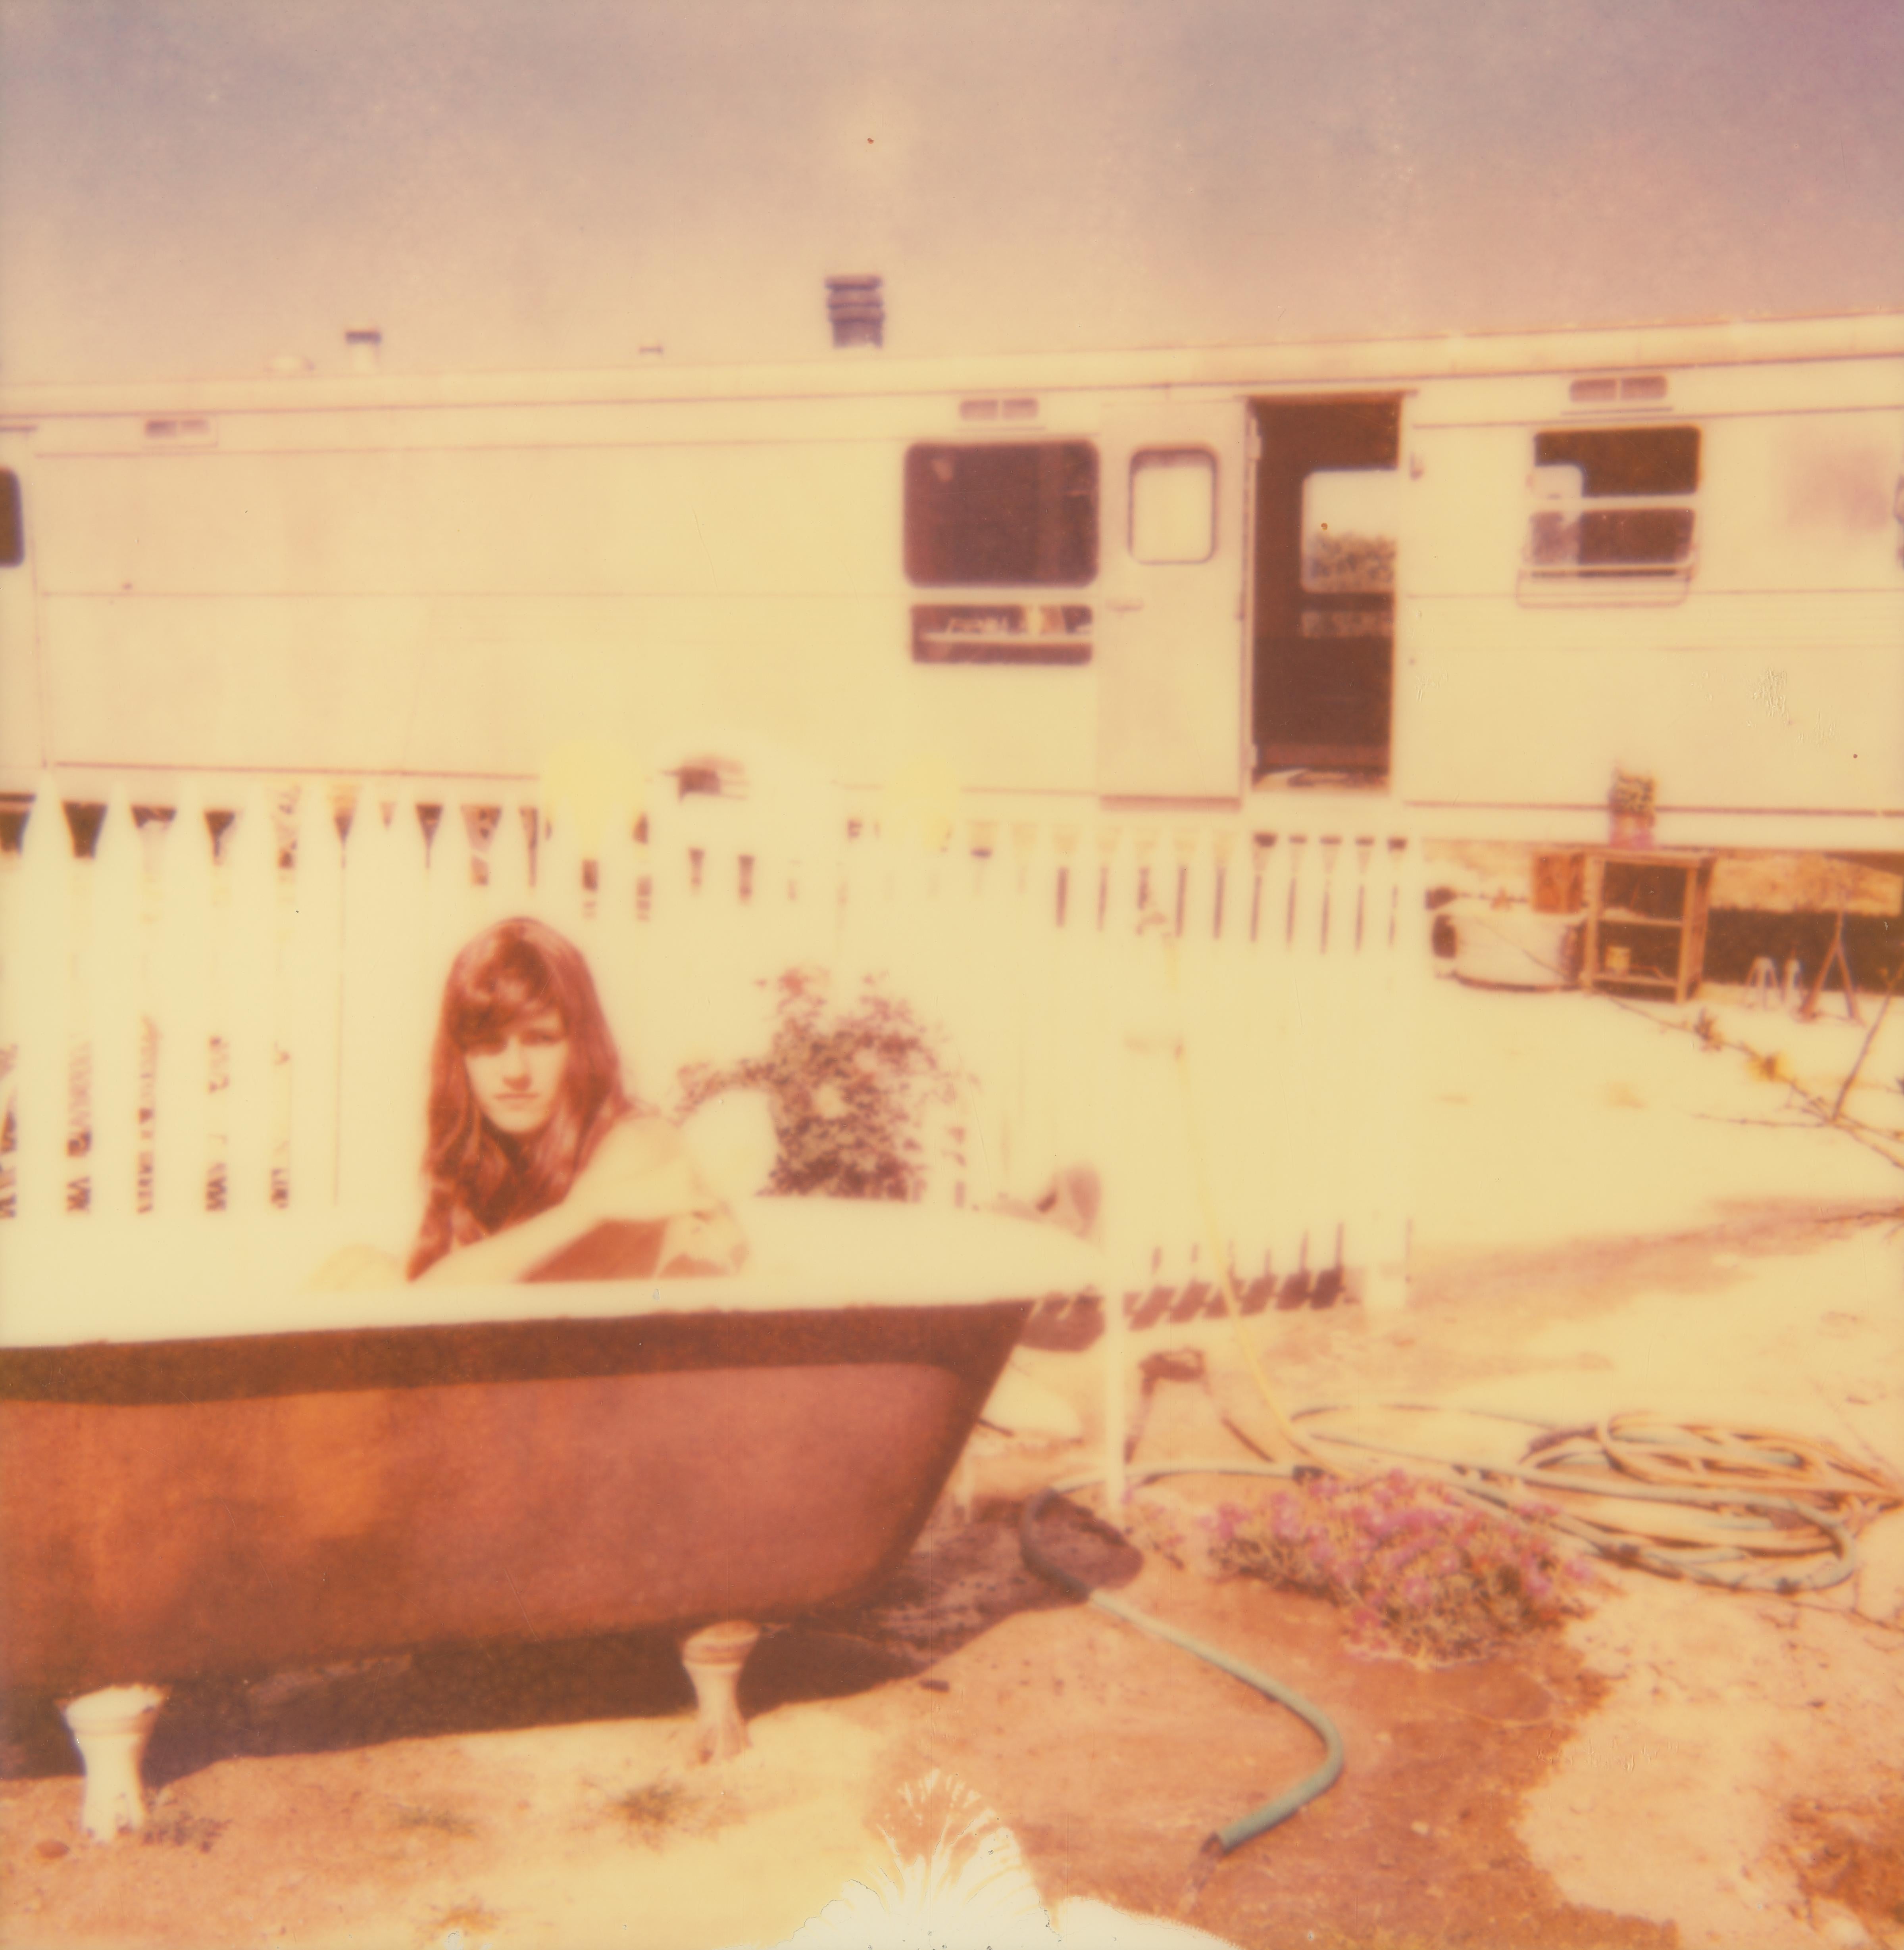 The Girl III (Das Mädchen hinter dem weißen Zaun) - Zeitgenössisch, Polaroid